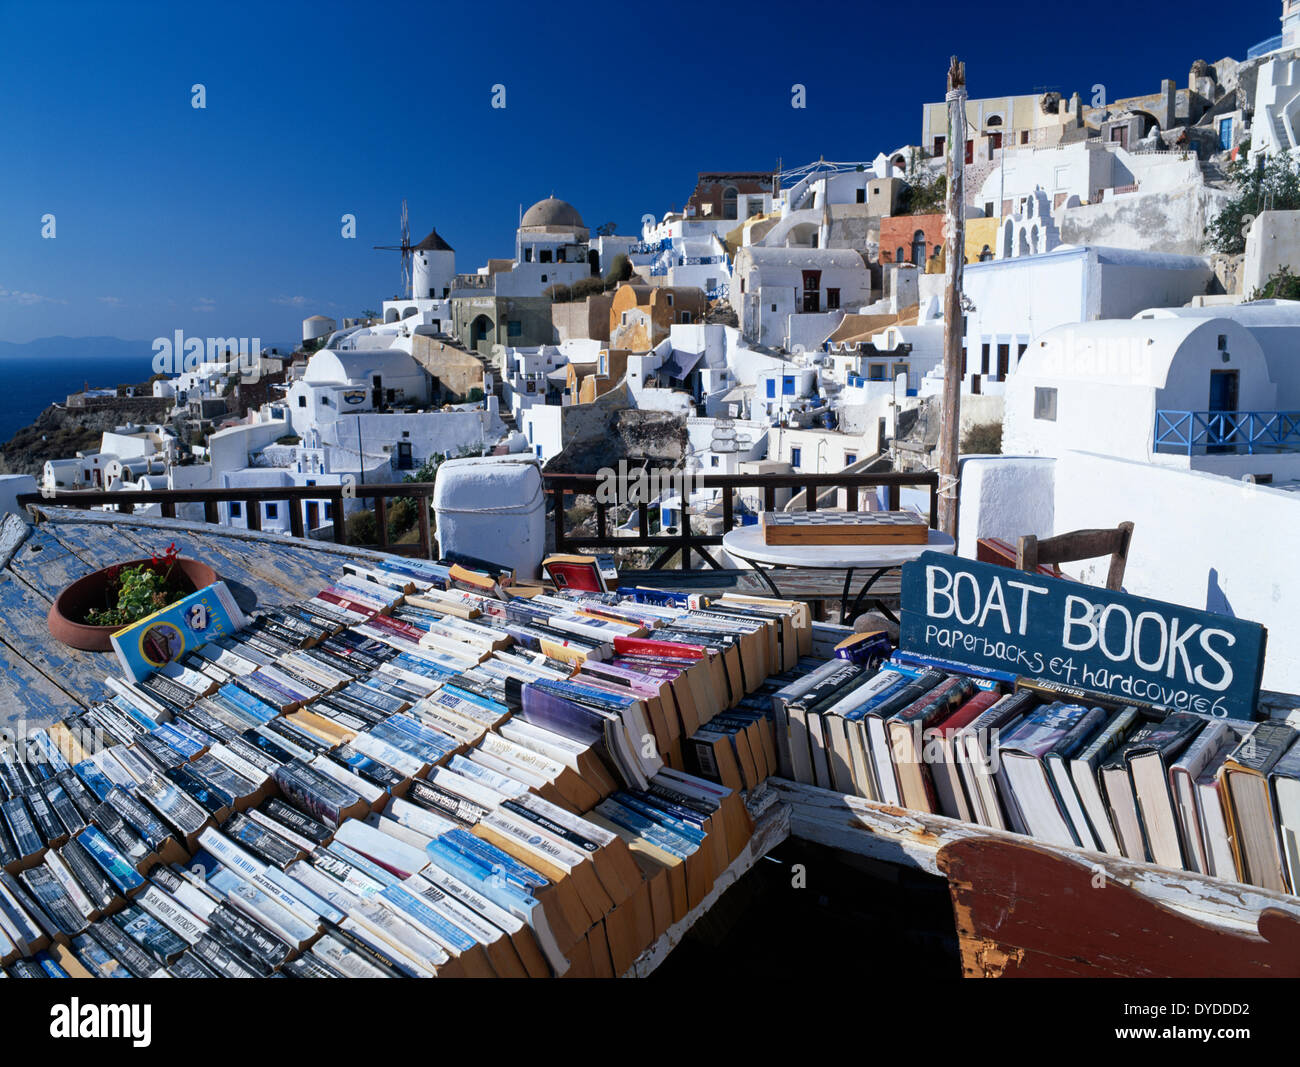 Bookshop overlooking Oia village. Stock Photo